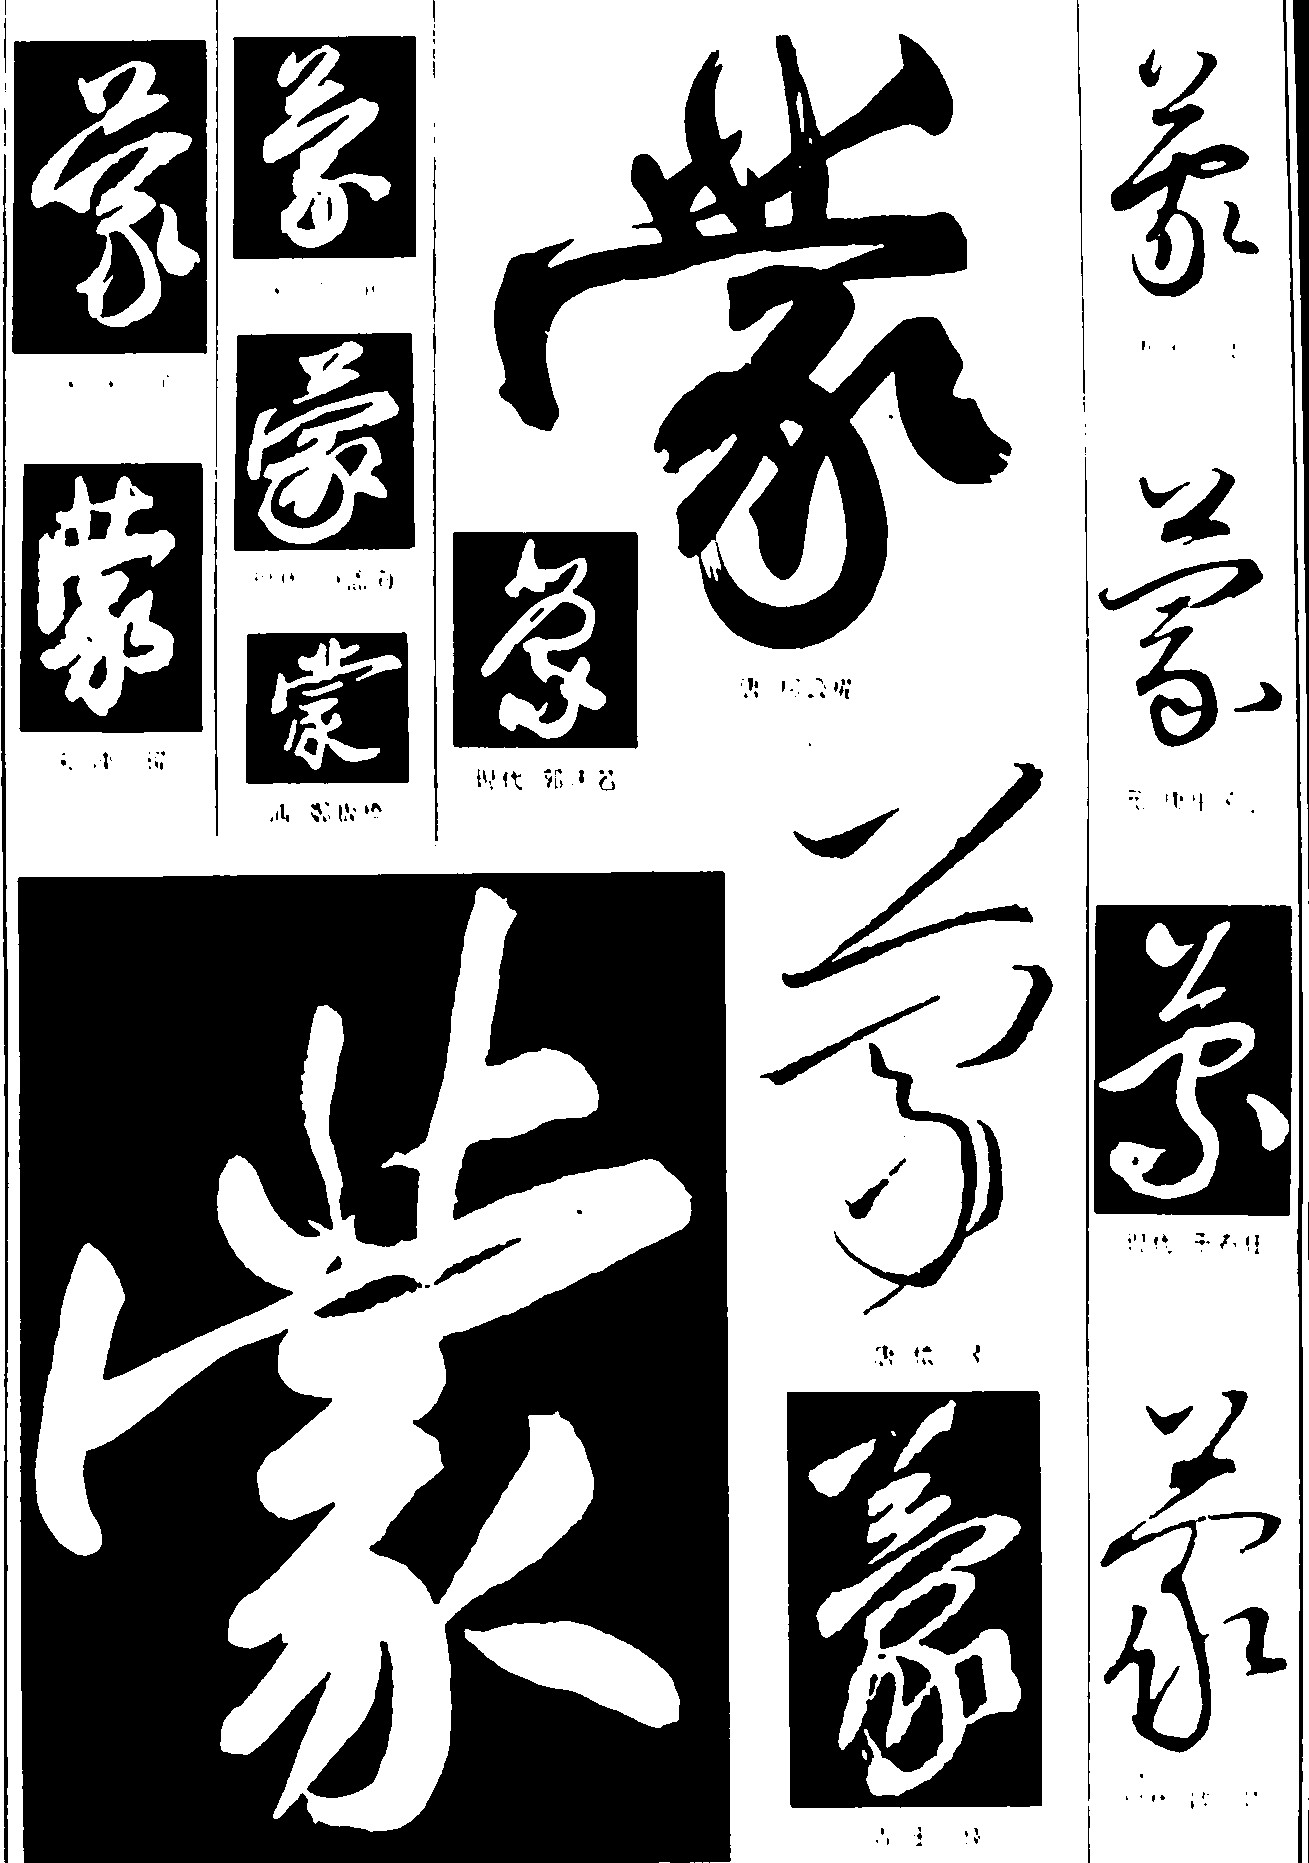 蒙_书法字体_字体设计作品-中国字体设计网_ziti.